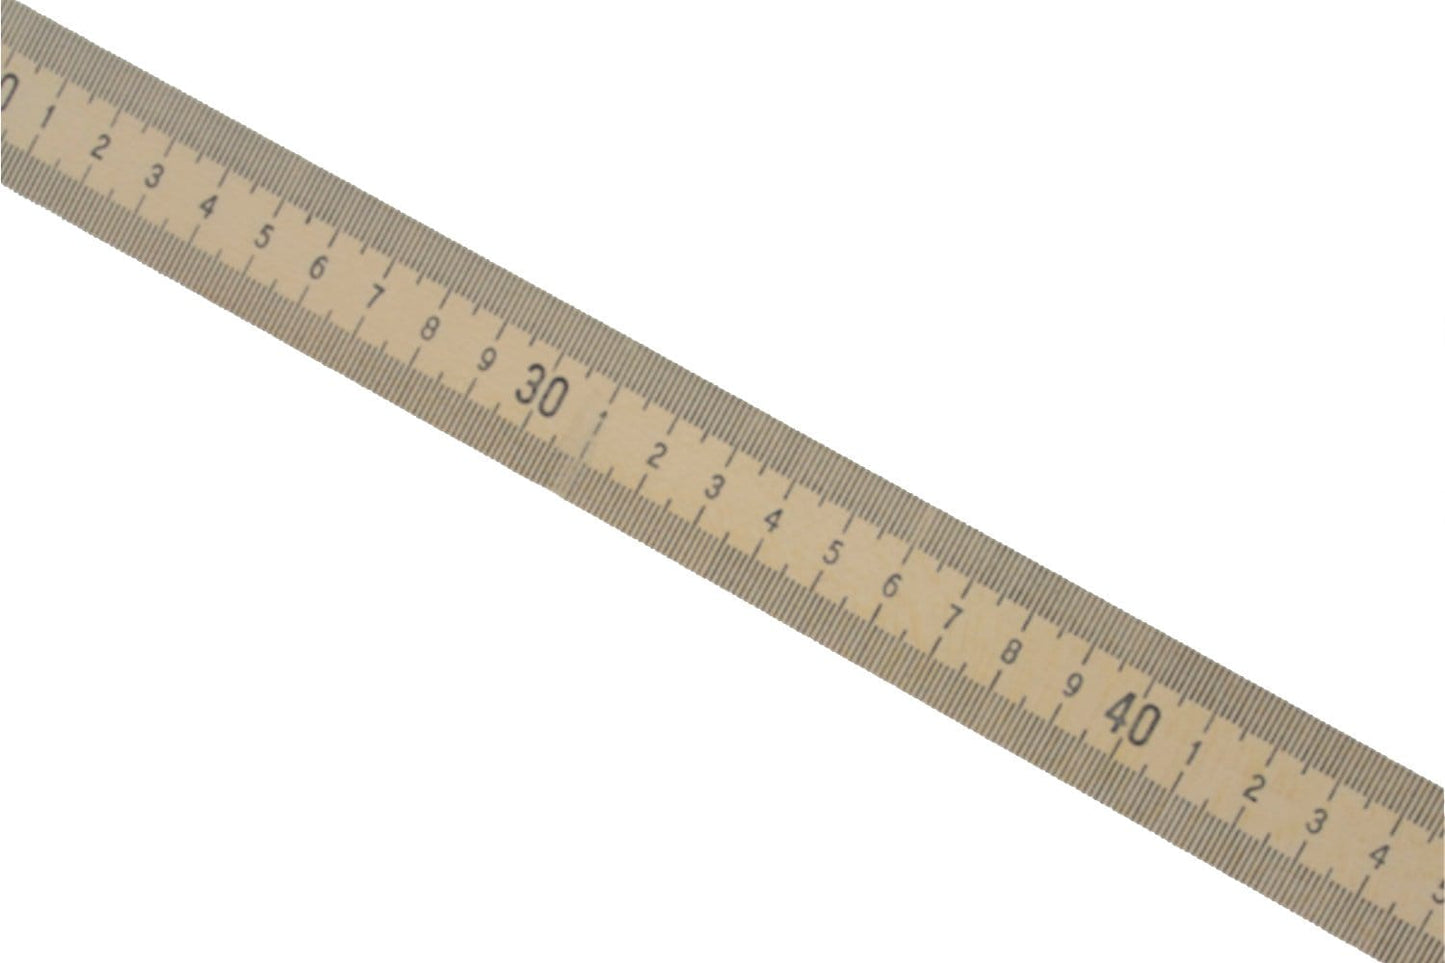 Aluminum Meter Sticks (6-pack) • ME-7032